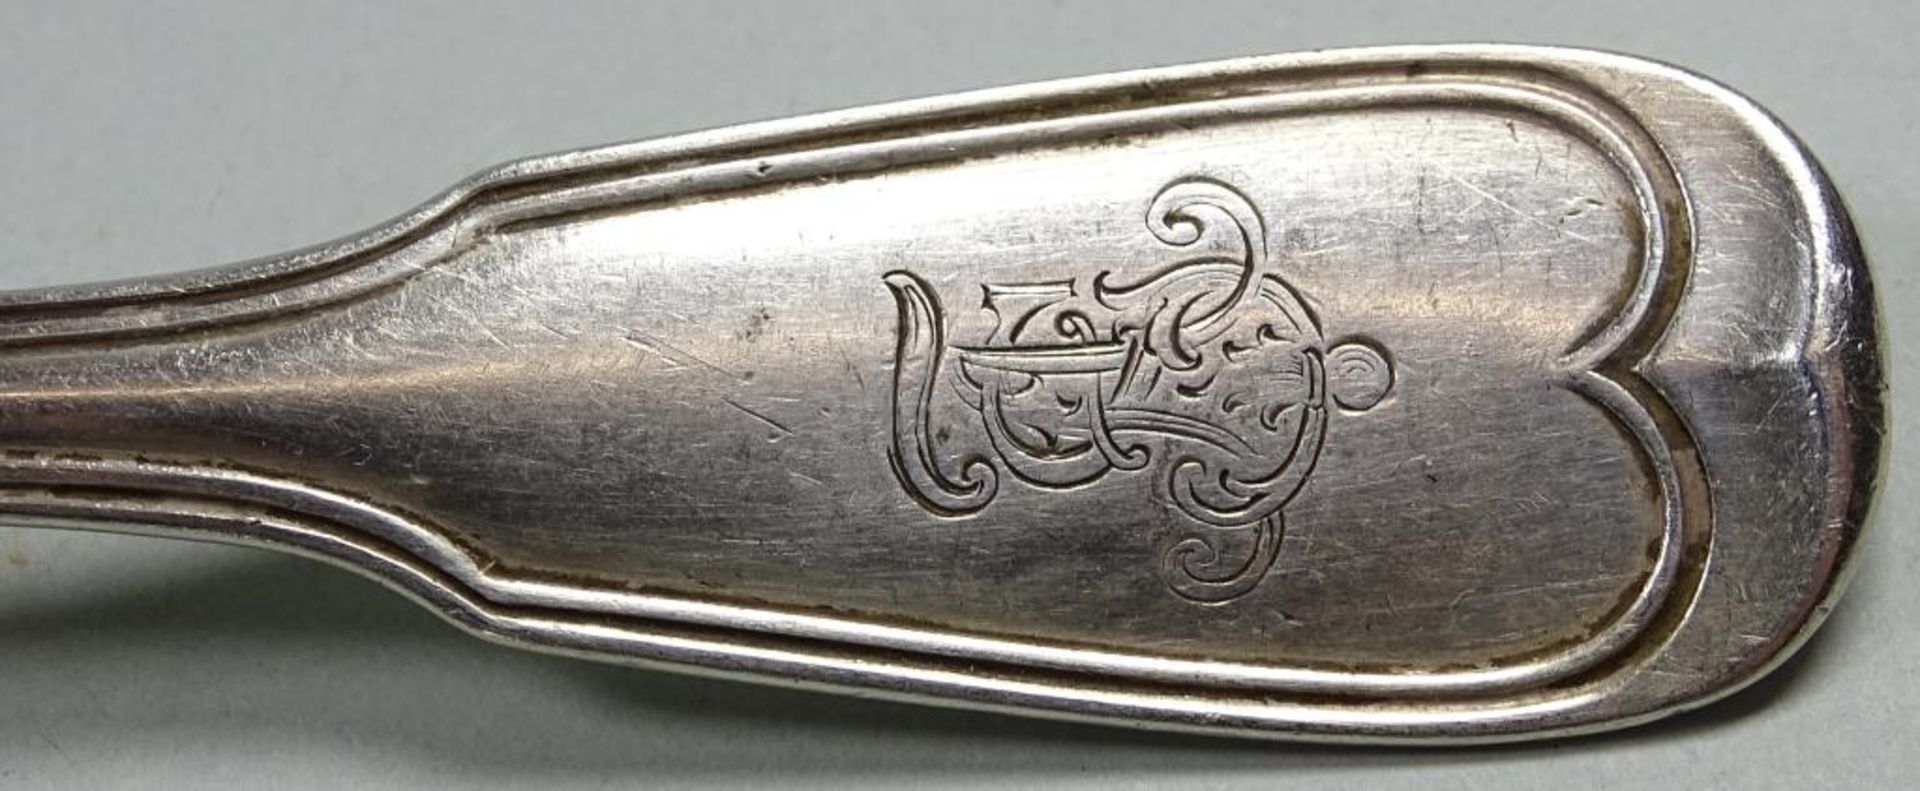 Zwei Esslöffel,Silber, ges.Gew. 121gr.L- 21,5cm,1x Augsburger Faden,Monogrammiert, 1x datiert 190 - Bild 7 aus 9